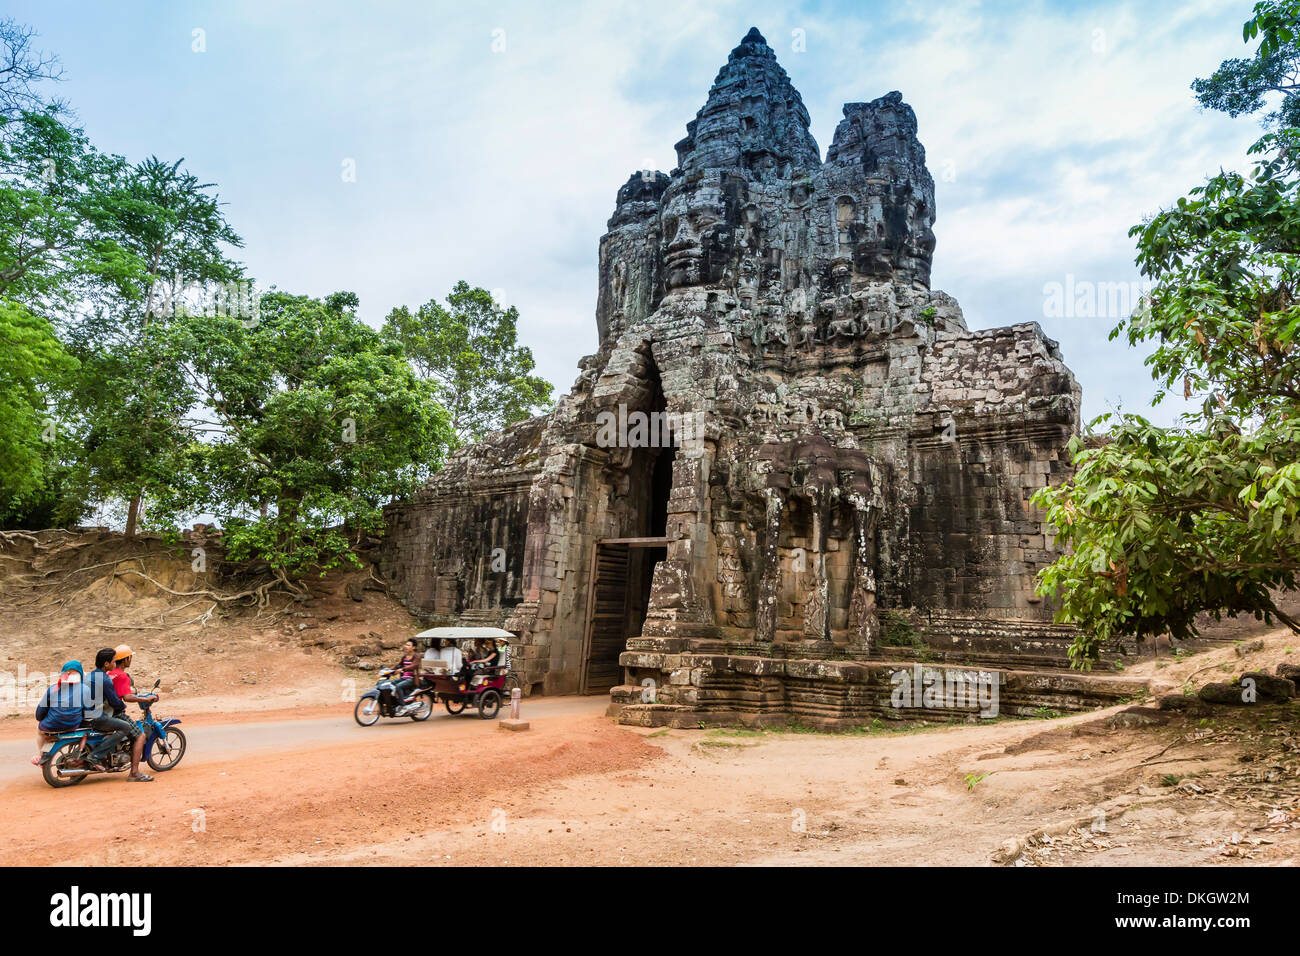 La Porte Sud d'Angkor Thom, Angkor, Site du patrimoine mondial de l'UNESCO, la Province de Siem Reap, Cambodge, Indochine, Asie du Sud, Asie Banque D'Images